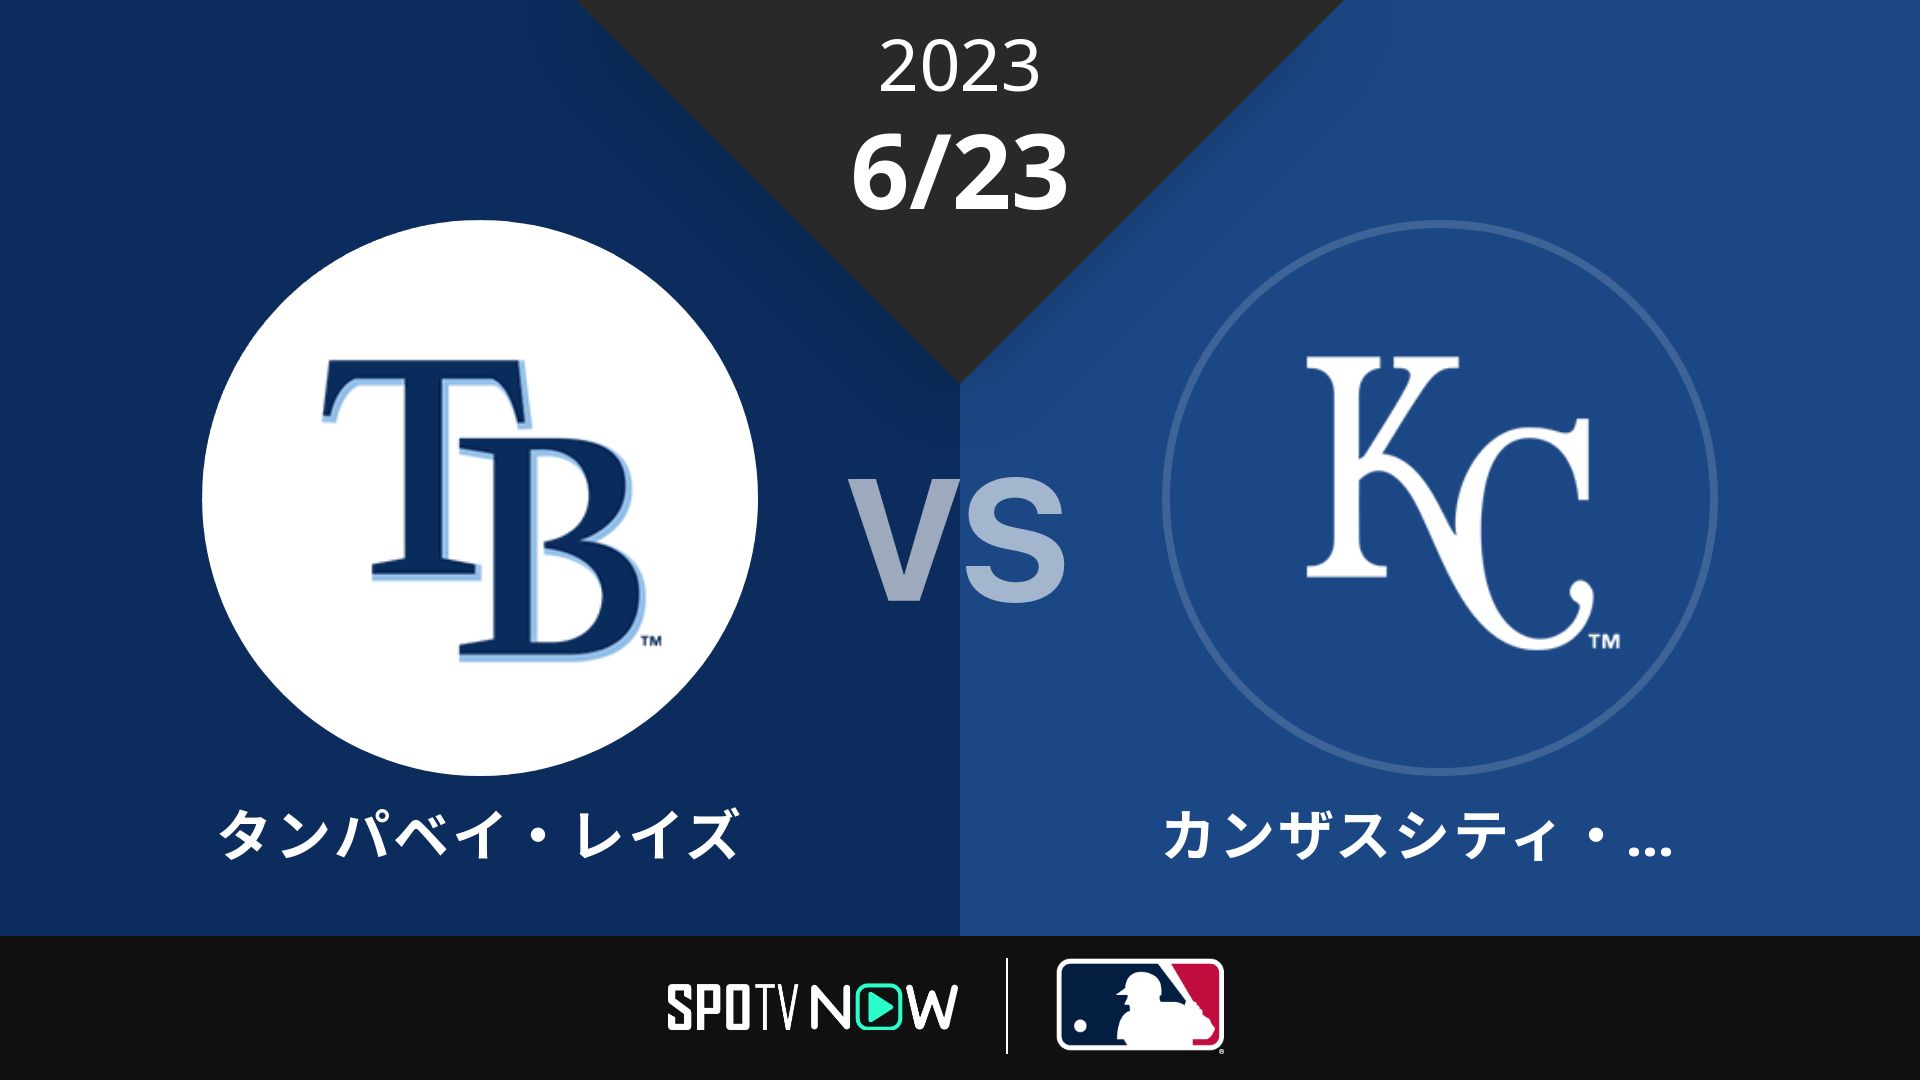 2023/6/23 レイズ vs ロイヤルズ [MLB]